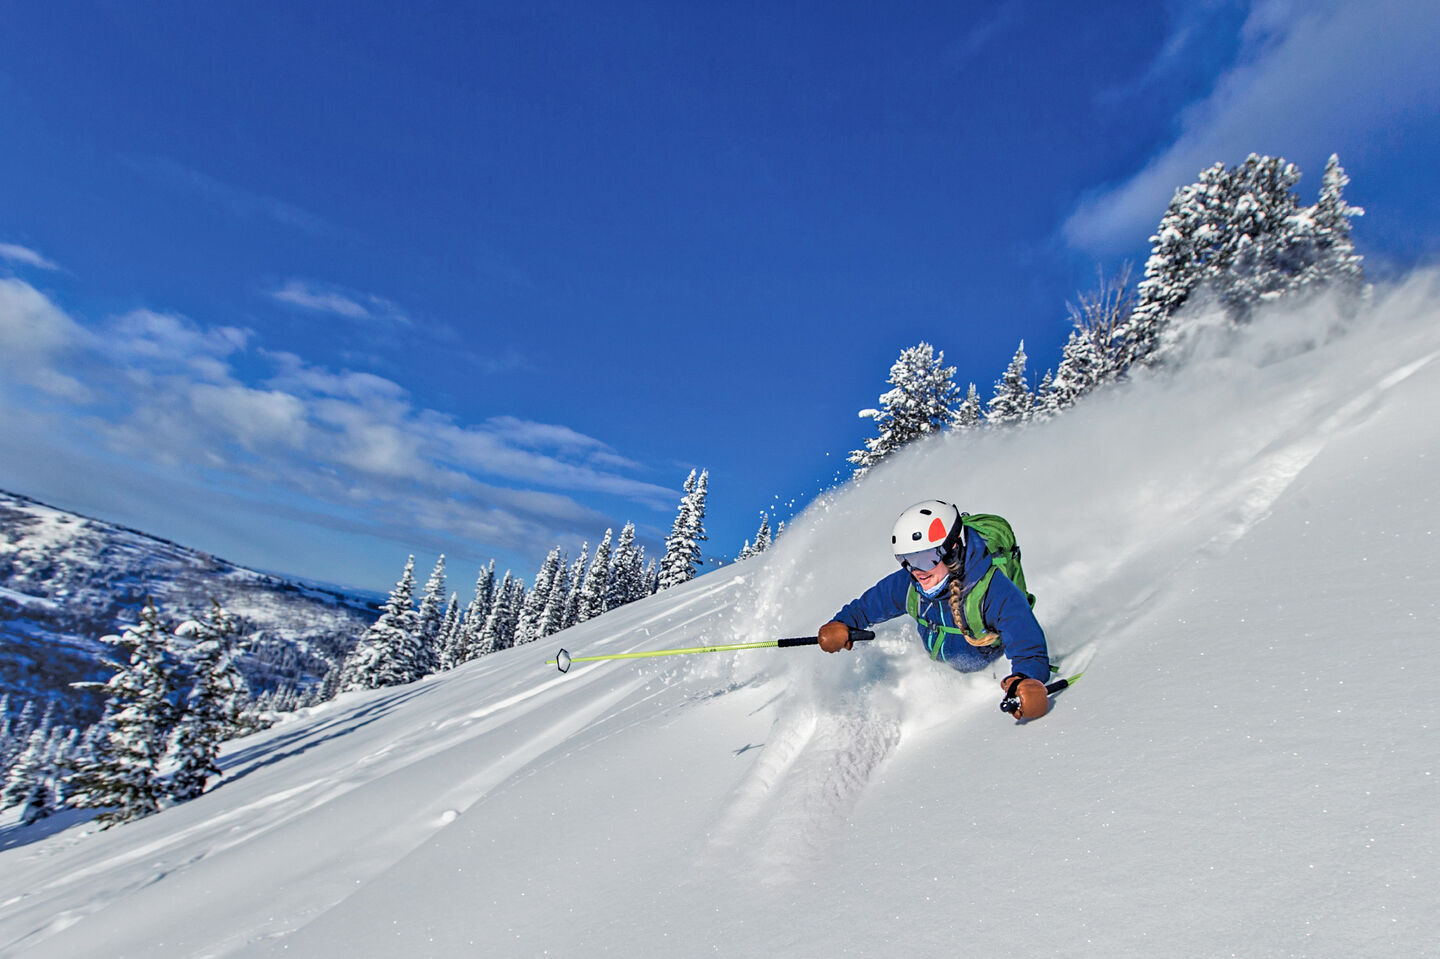 Skier in deep powder with blue skies